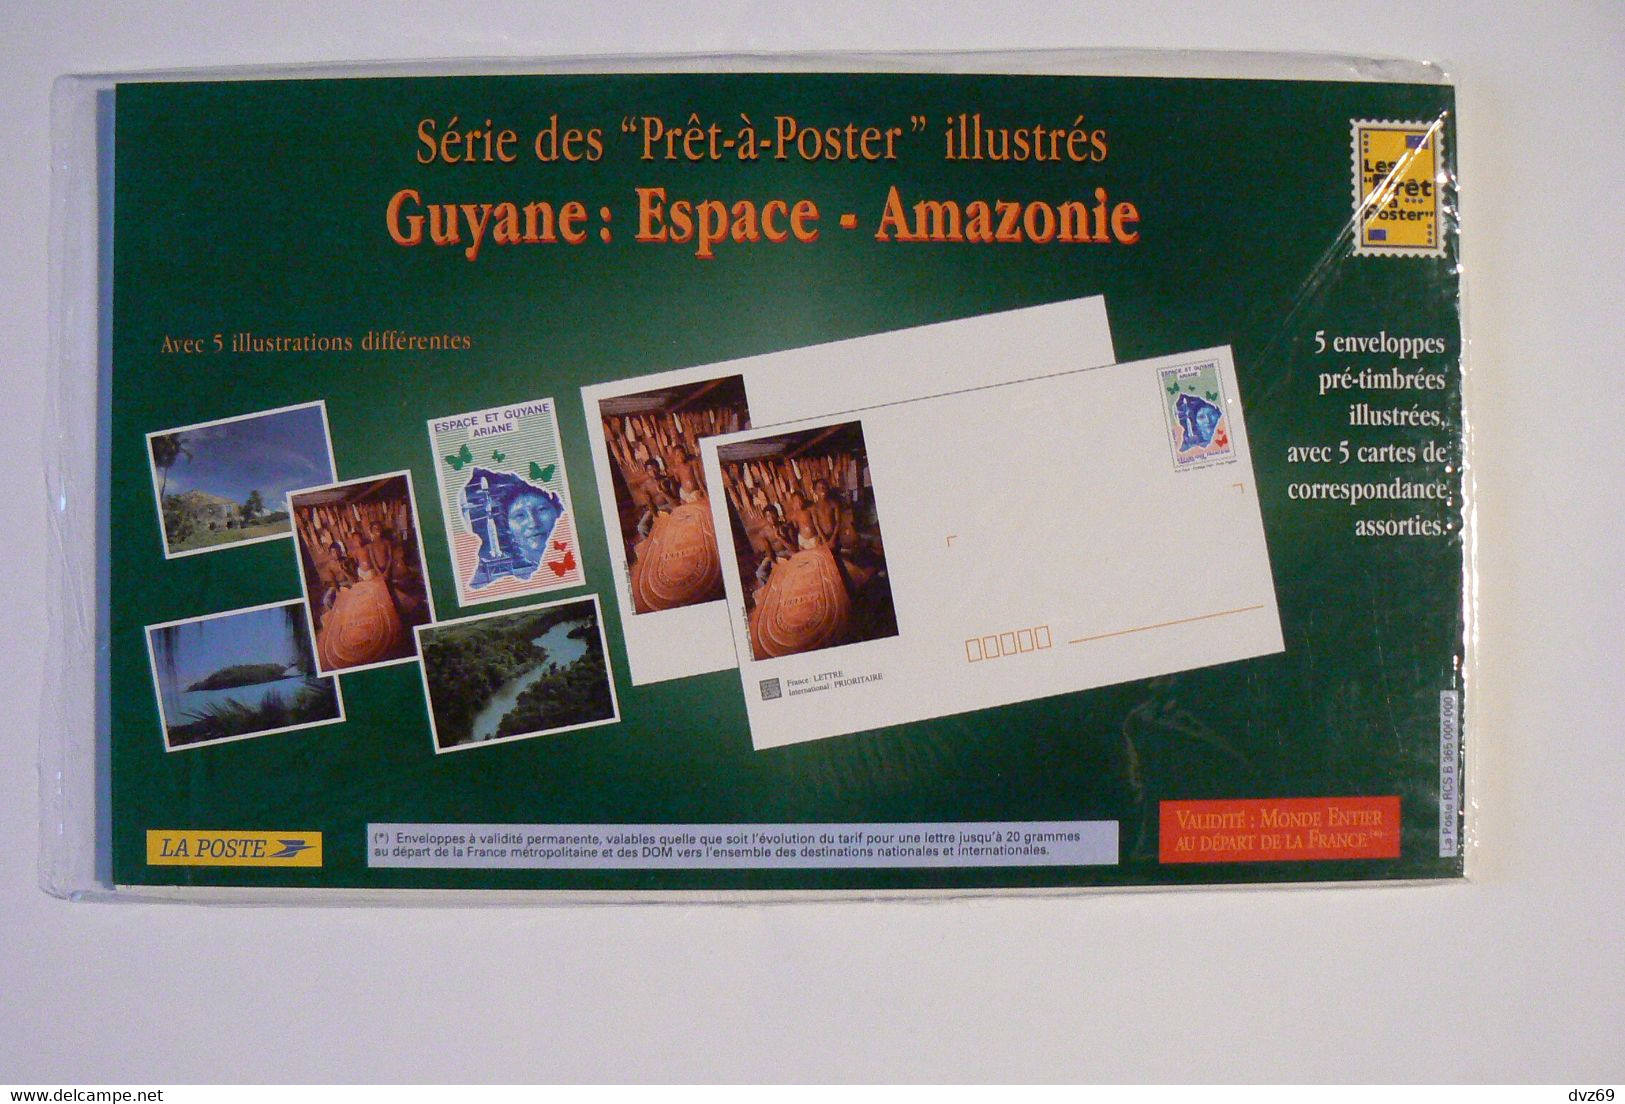 Guyane Espace Amazonie, 5 Enveloppes Pré-timbrées Illustrées + Cartes Assorties, Encore Sous Blister Ouvert, TB. - Collections & Lots: Stationery & PAP